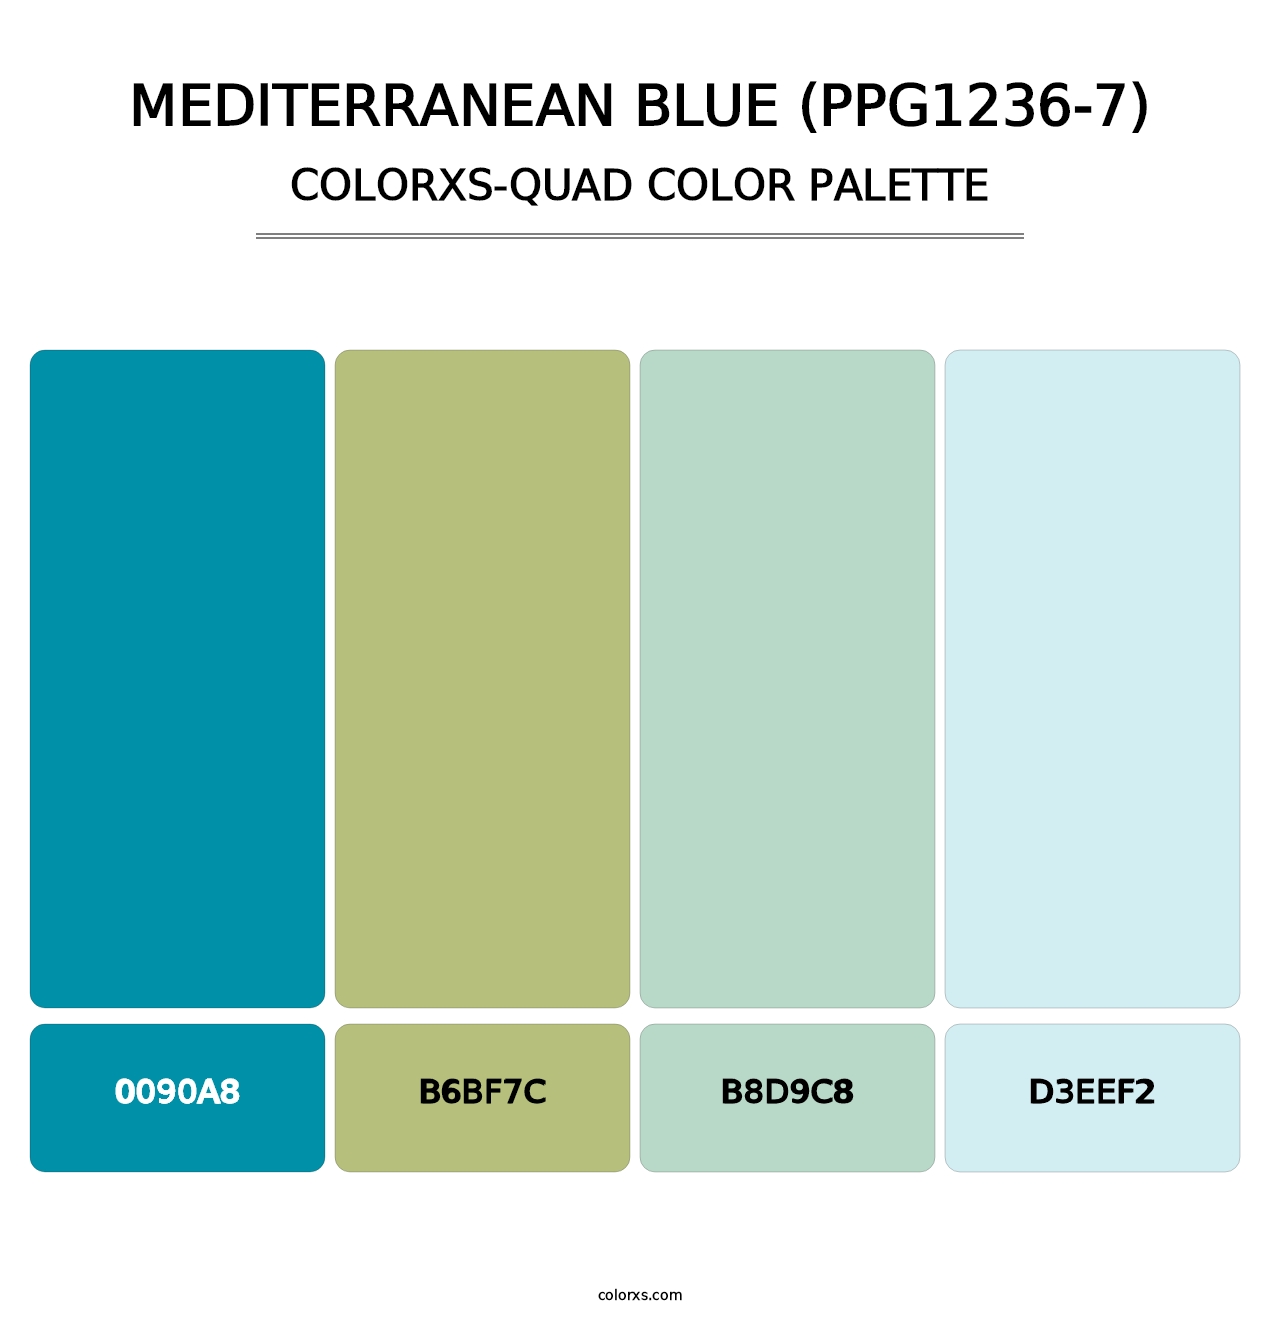 Mediterranean Blue (PPG1236-7) - Colorxs Quad Palette